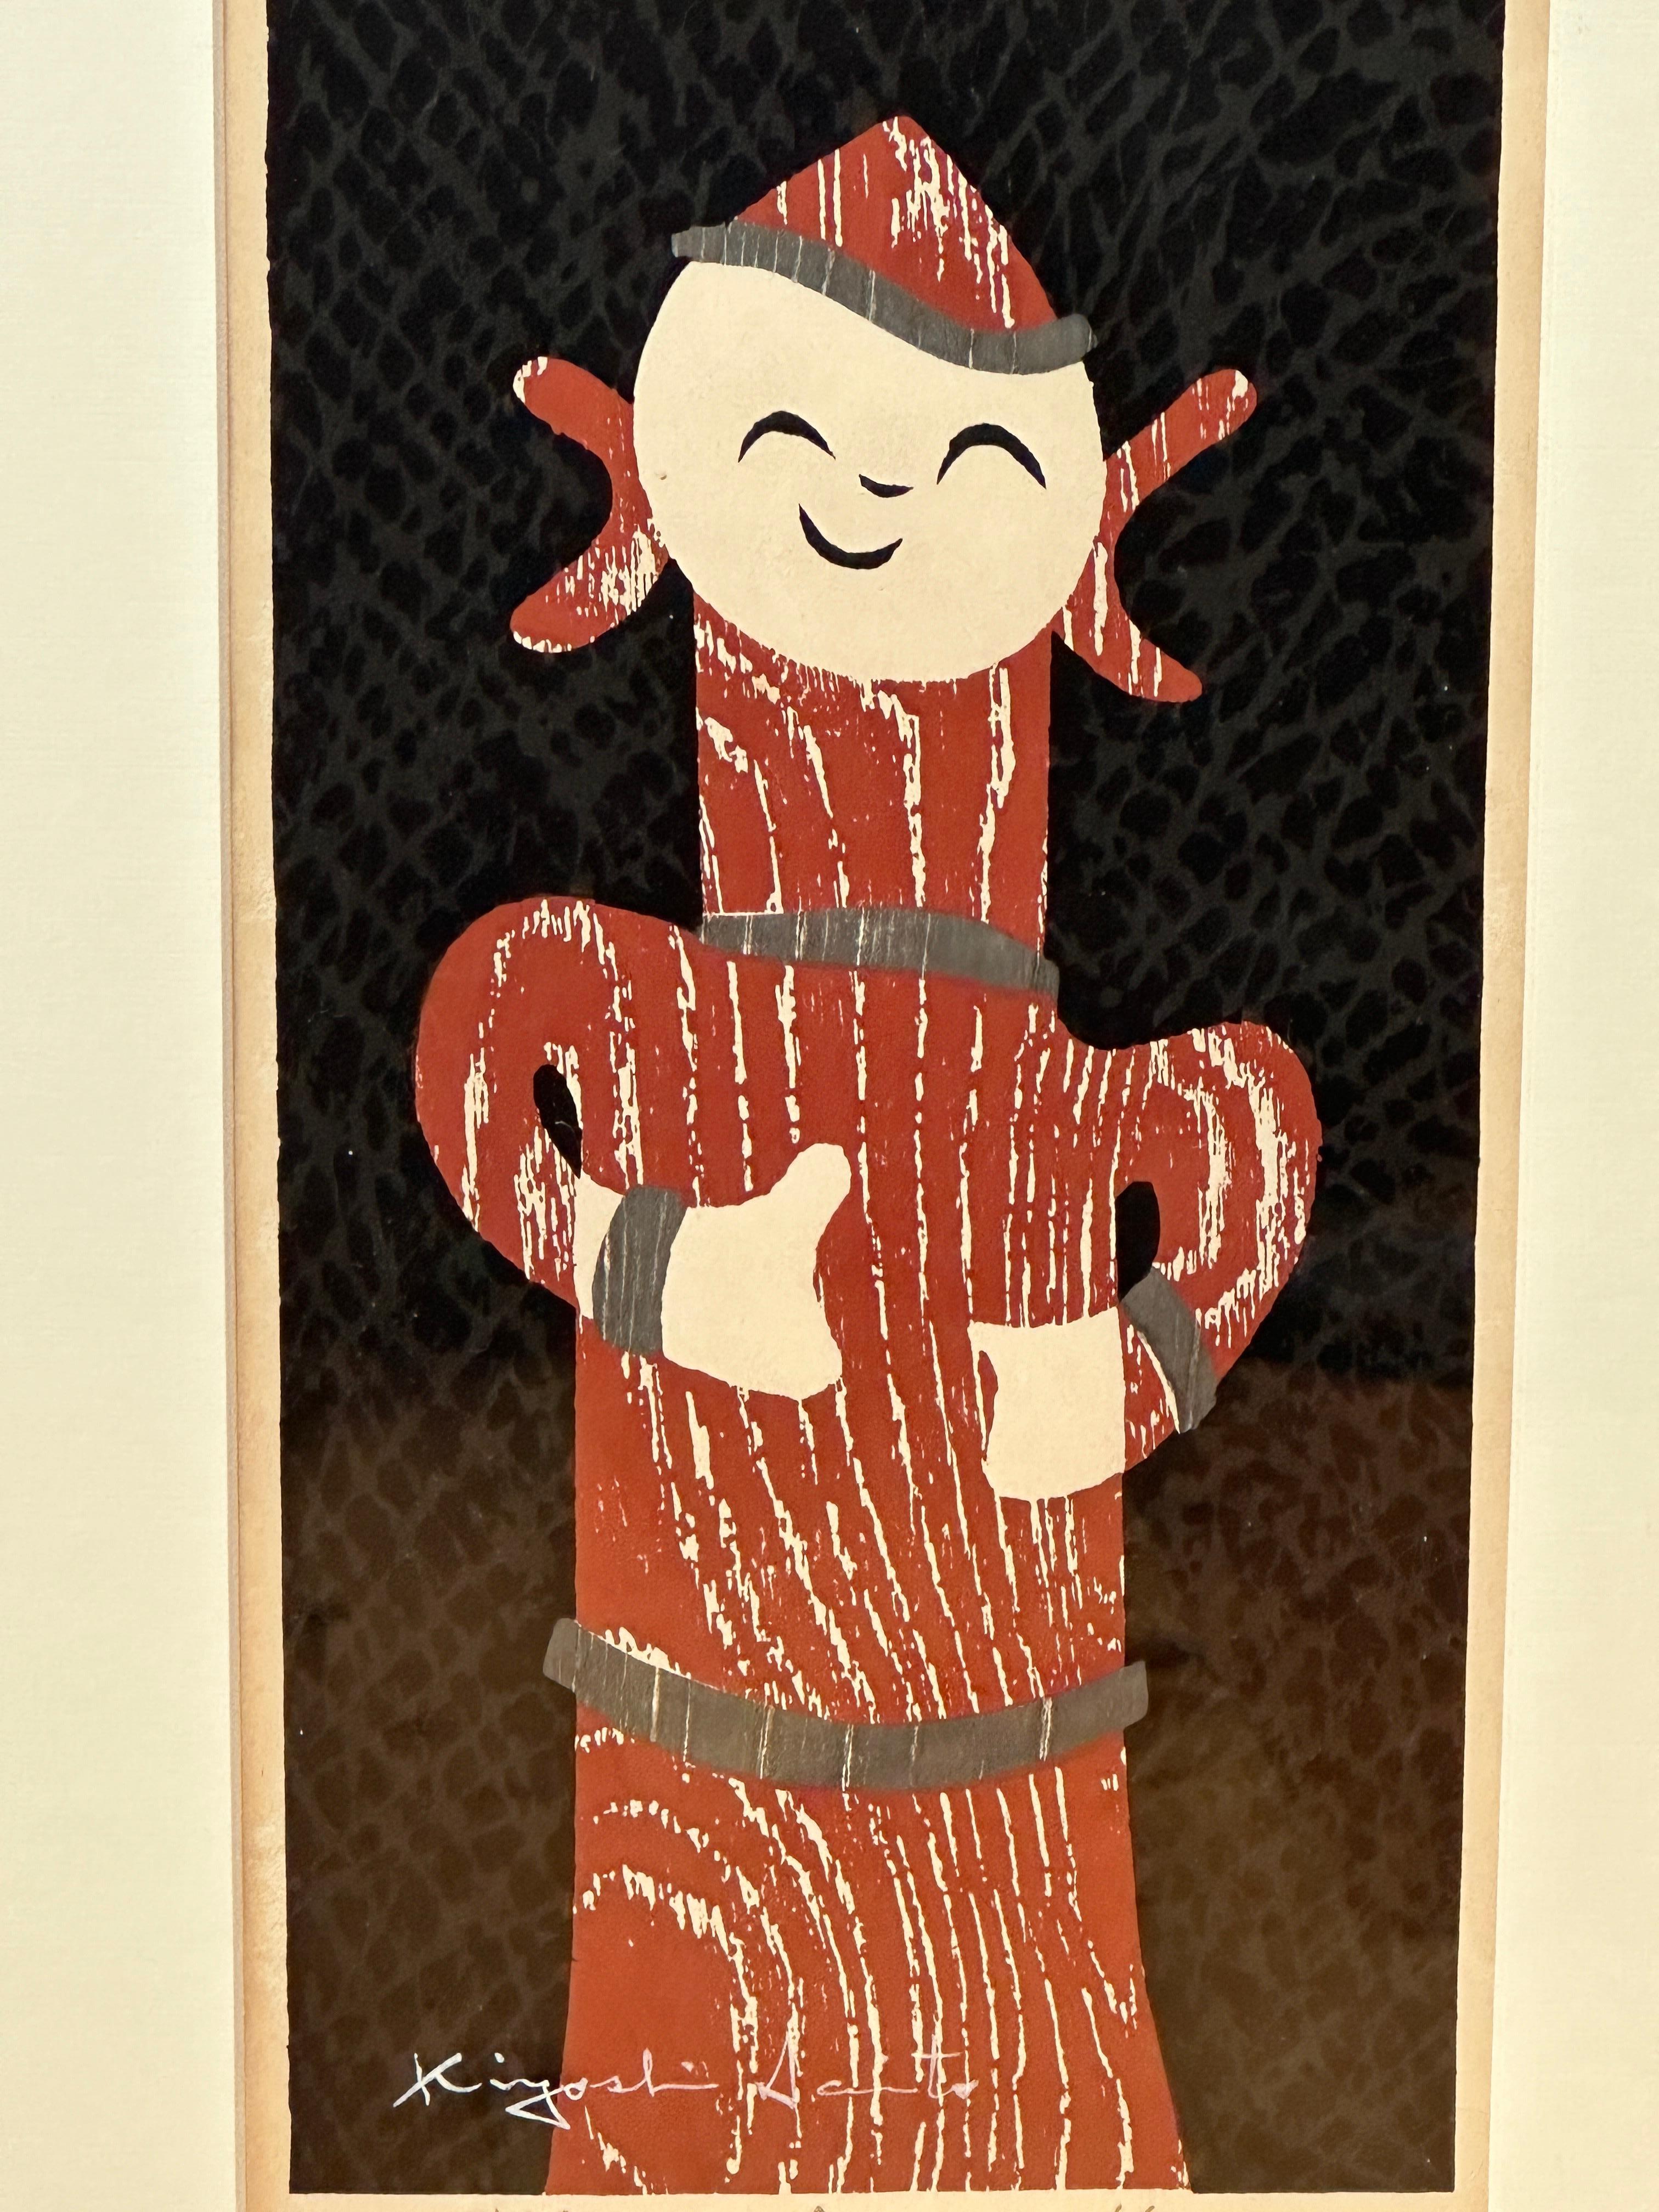 Dieser japanische Holzschnitt von Kiyoshi Saito (1907-1997) ehrt Japans reiches kulturelles Erbe, insbesondere die Haniwa-Terrakottafiguren, die zu rituellen Zwecken hergestellt und während der Kofun-Periode (3.-6. Jahrhundert n. Chr.) als